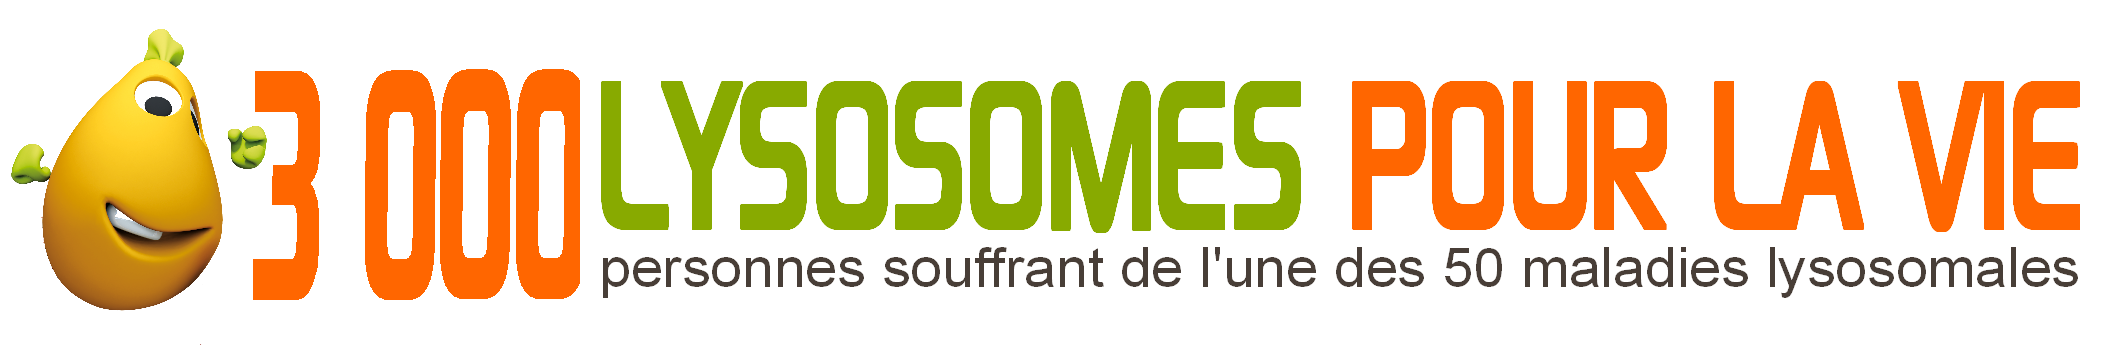 3000-lysosomes-pour-la-vie.png